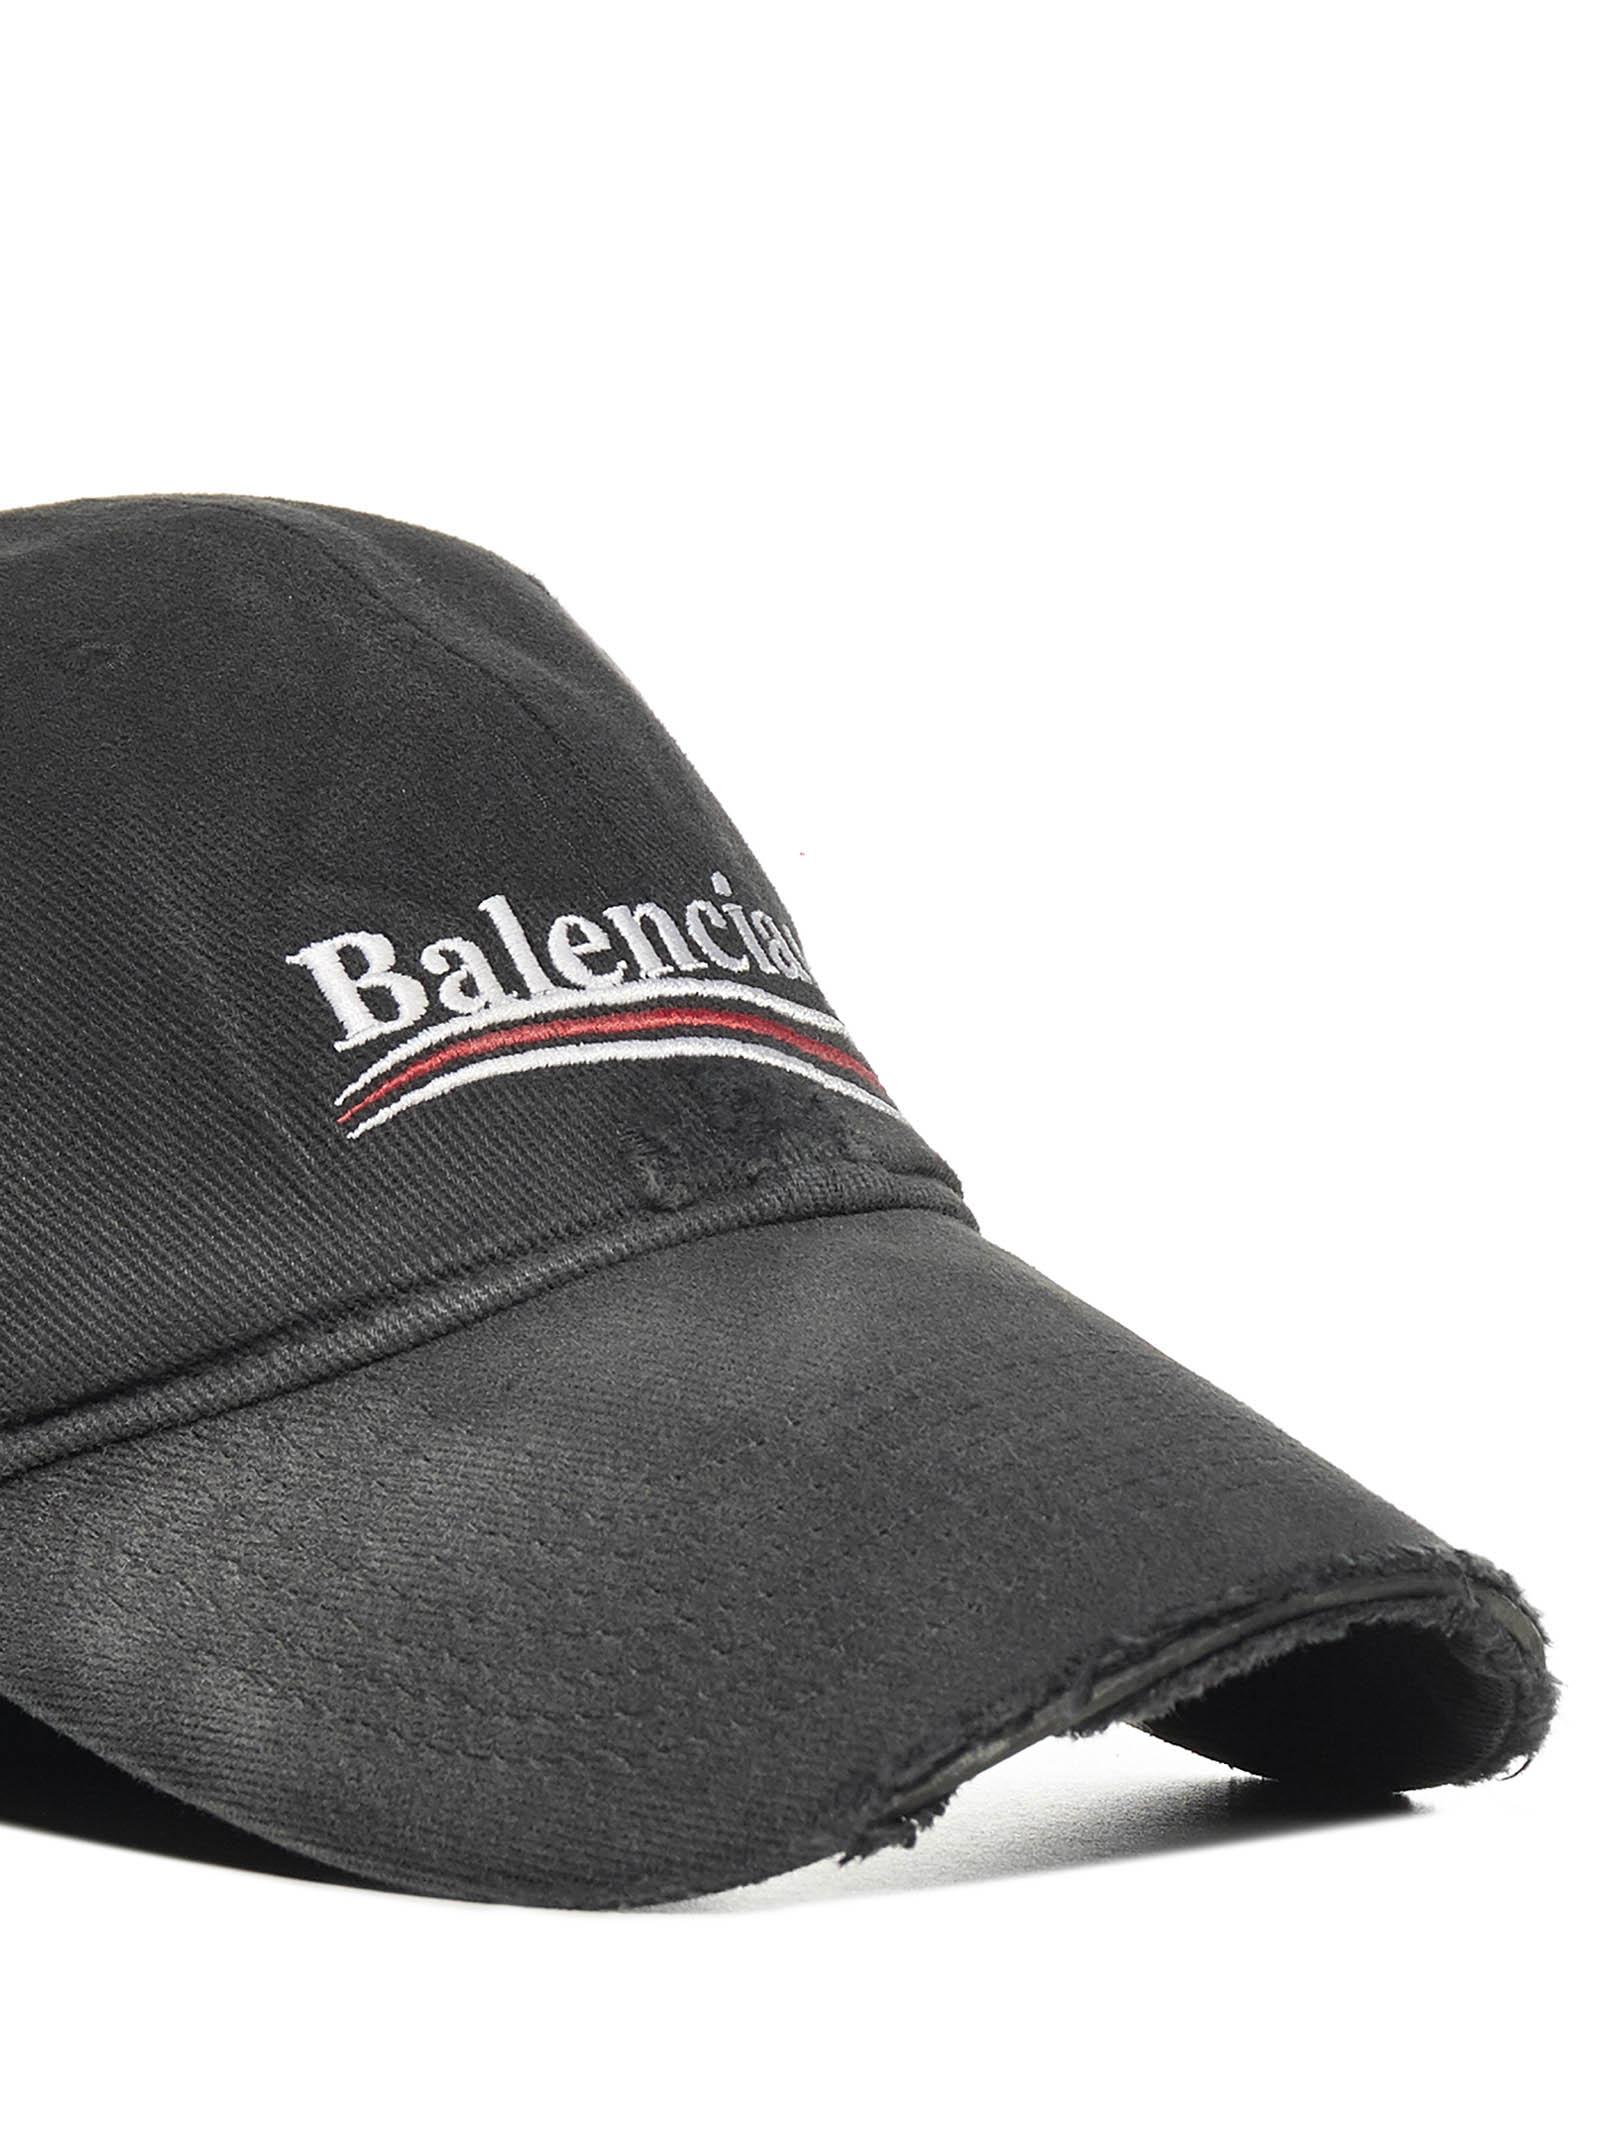 Balenciaga Political Campaign Destroyed Cotton Logo Cap in Black 